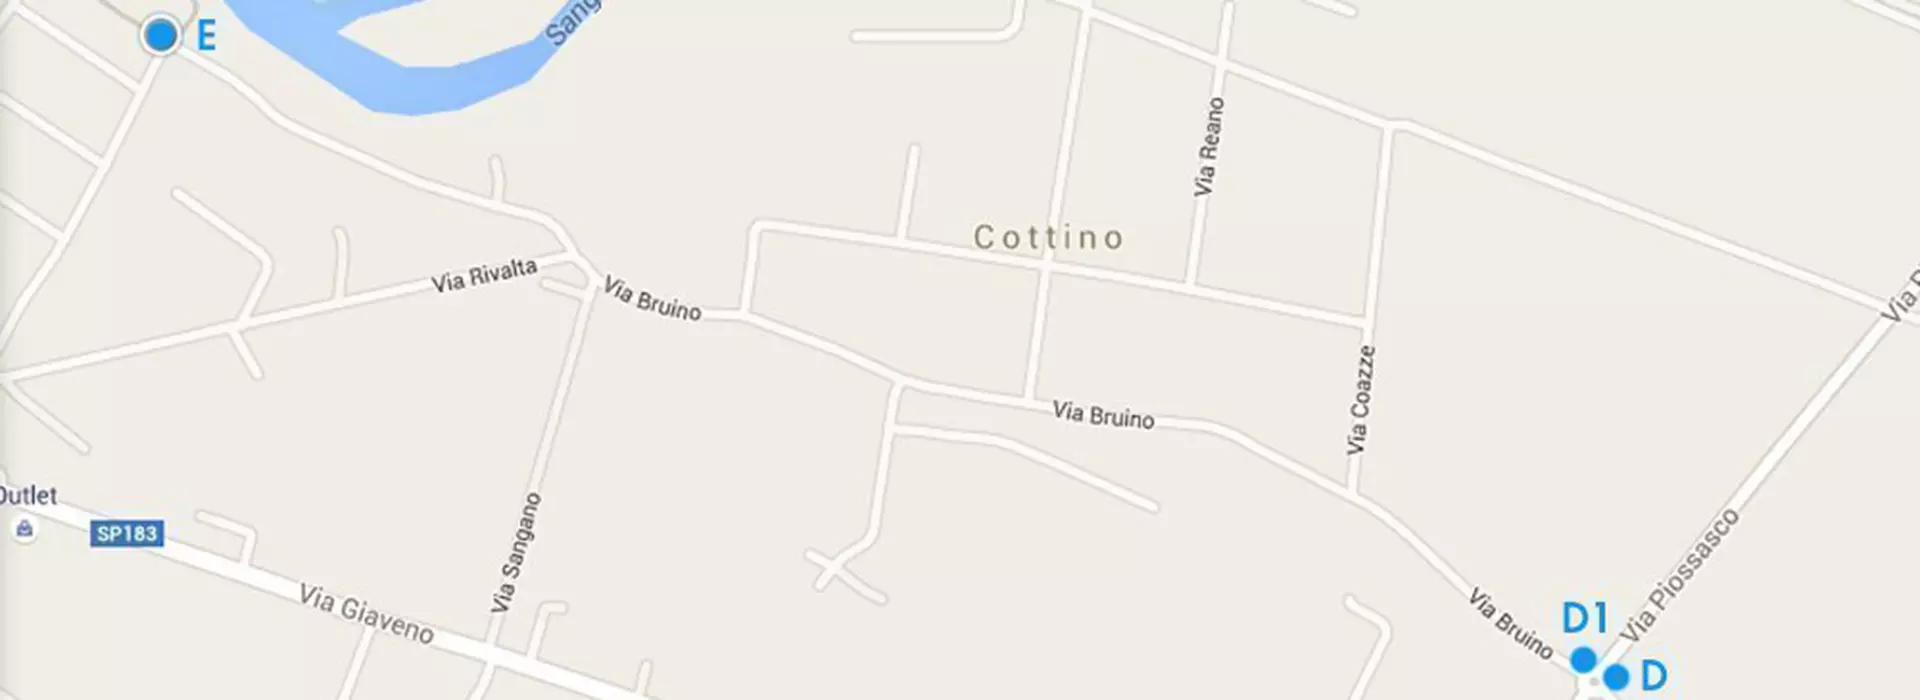 Screenshot di Google maps del Tratto Bruino ( Via Bruino) - Sangano (Via Villarbasse) con evidenziati i punti D D1 ed E della via fluviale del Sangone Fiume